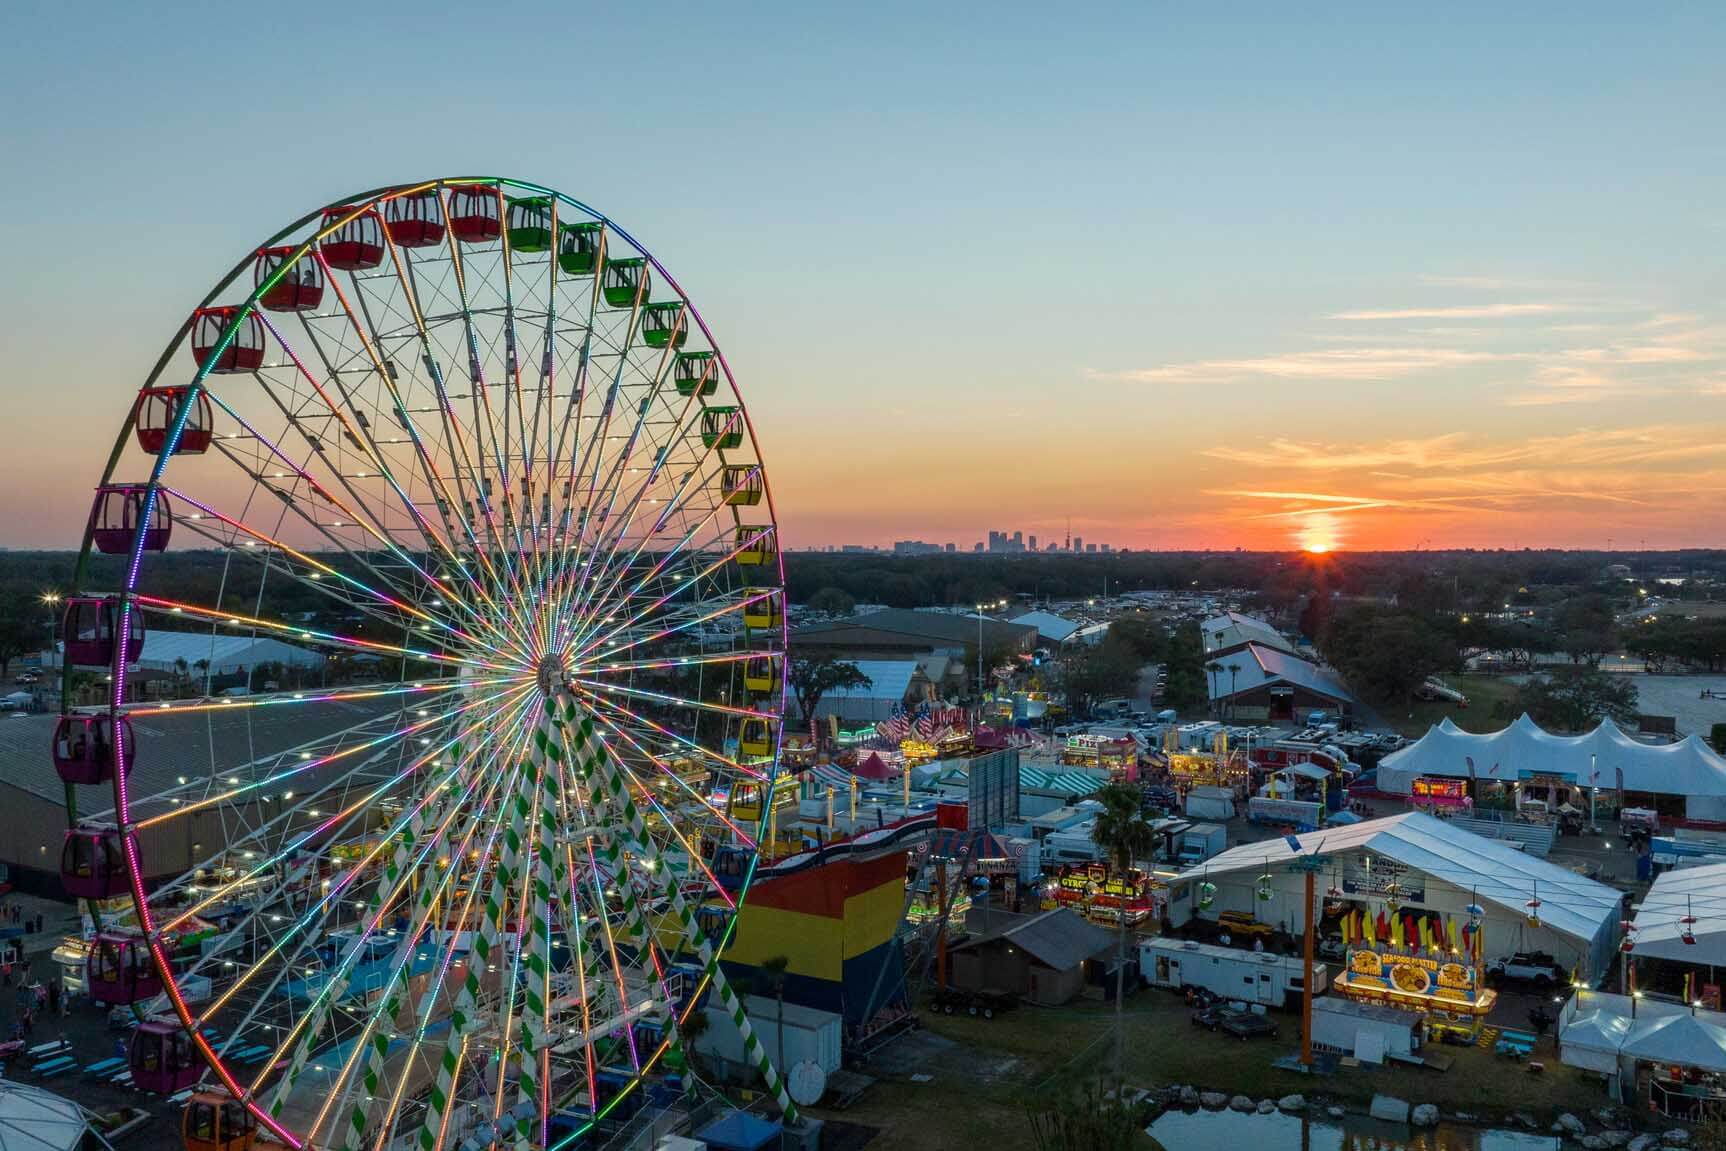 Florida State Fair at sunset